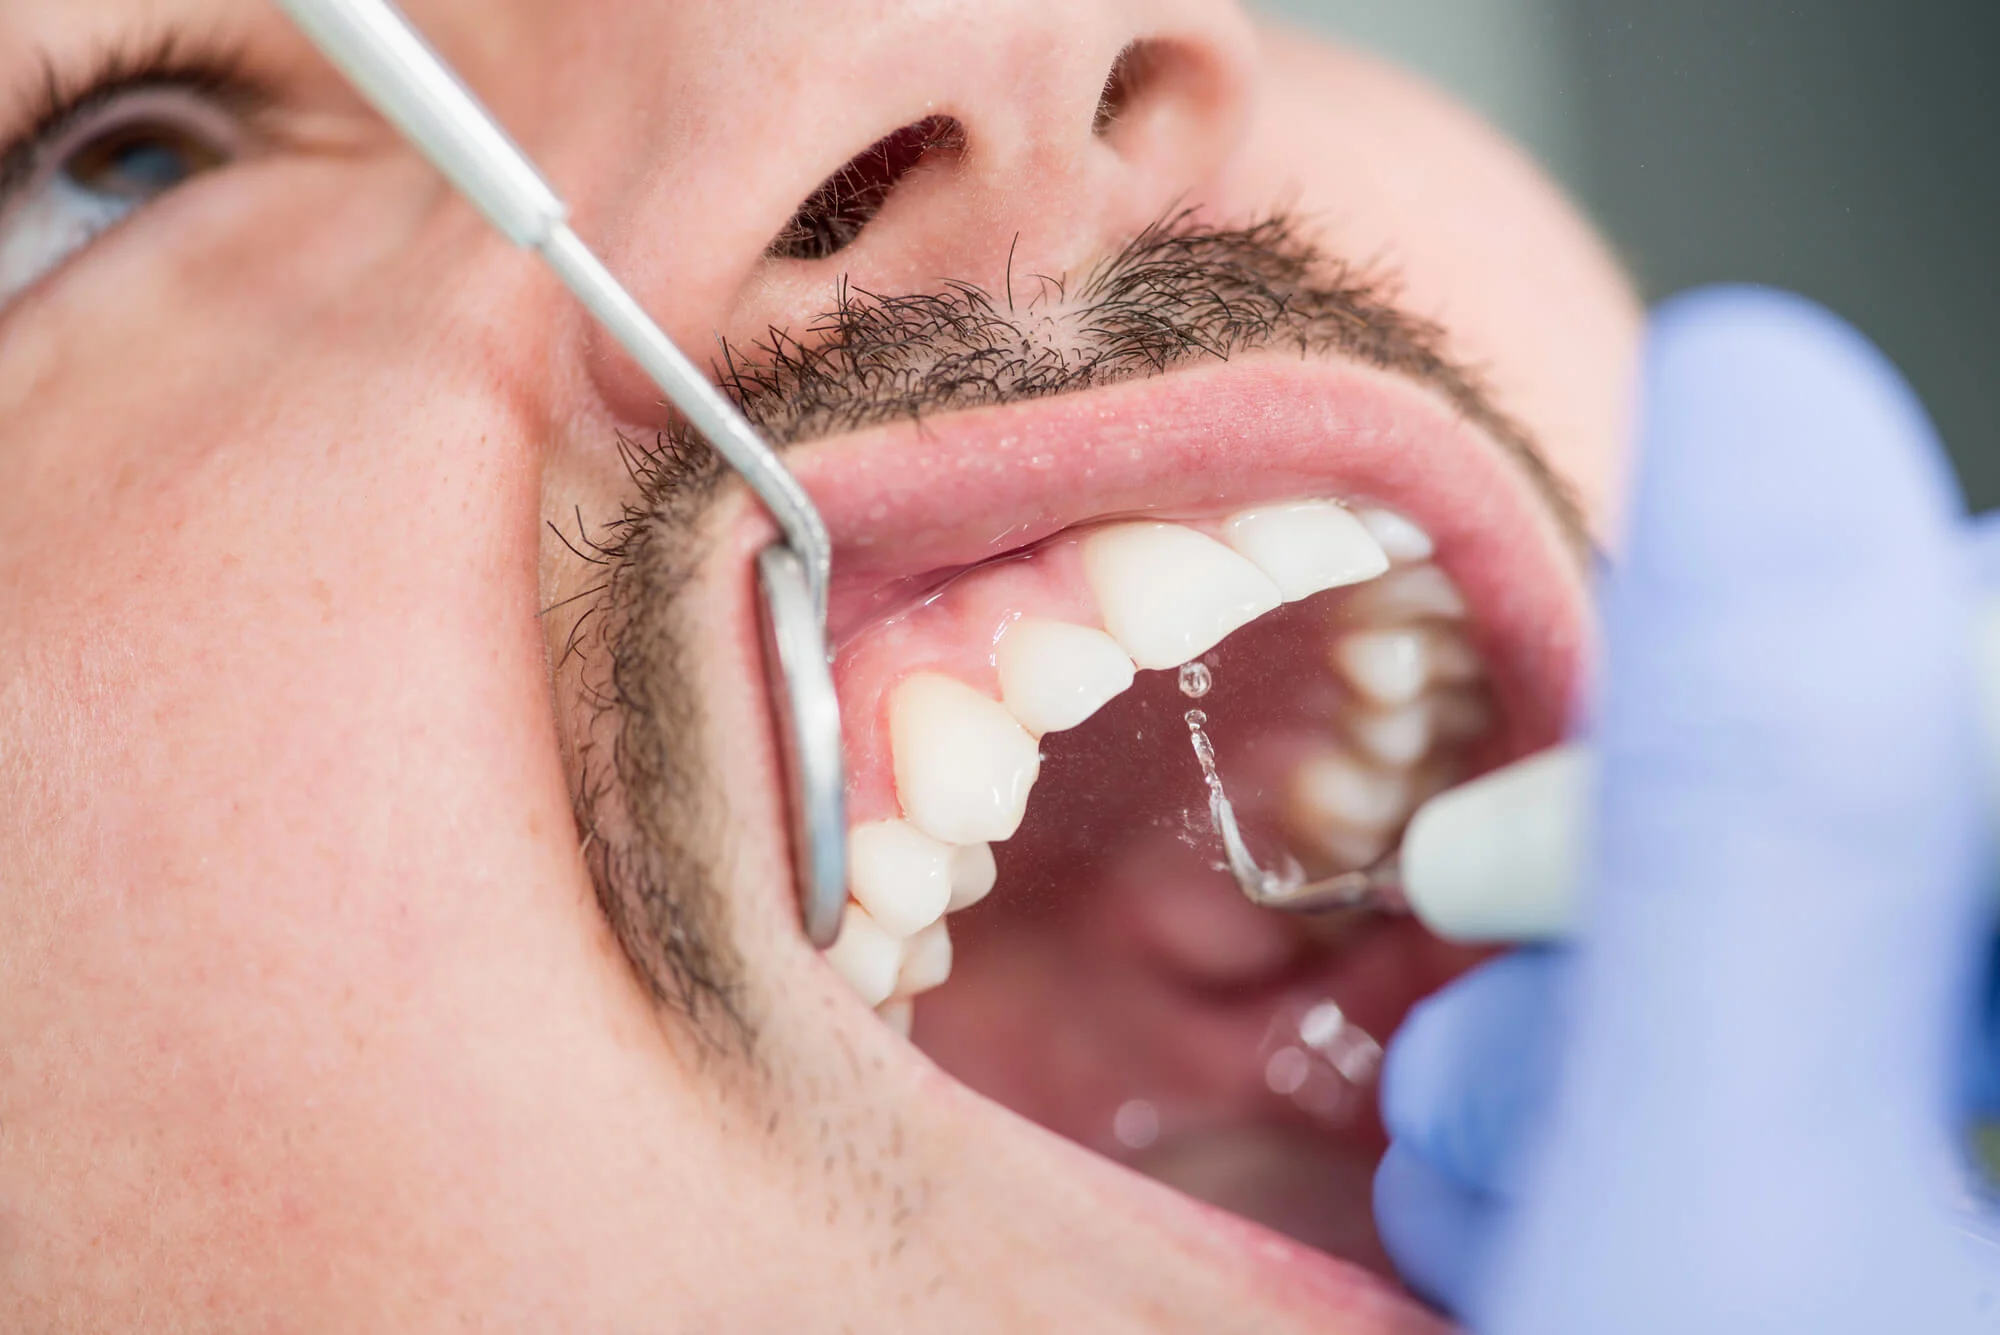 general dentist las vegas cleans patient's teeth